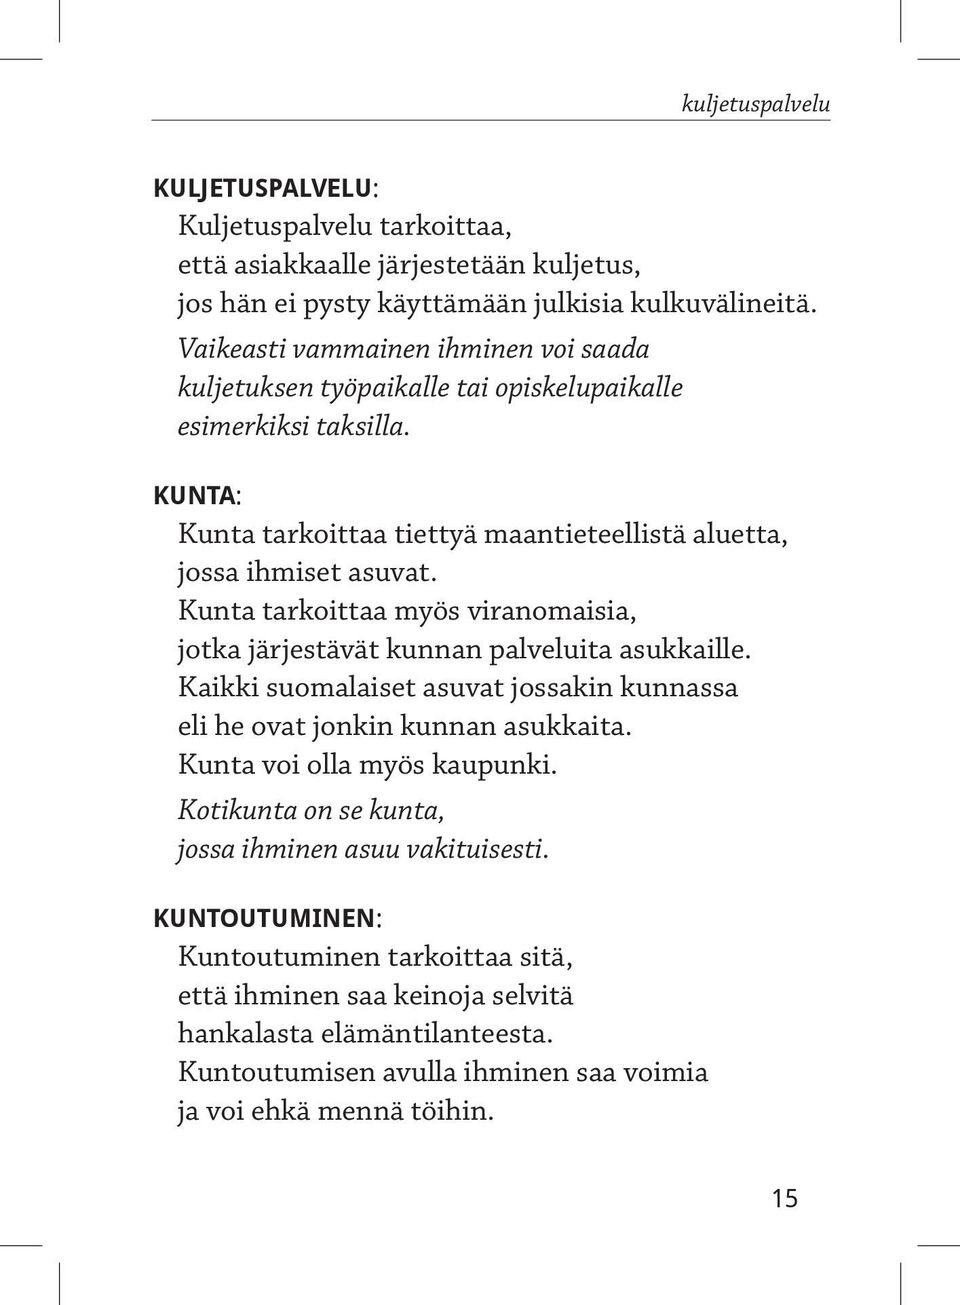 Kunta tarkoittaa myös viranomaisia, jotka järjestävät kunnan palveluita asukkaille. Kaikki suomalaiset asuvat jossakin kunnassa eli he ovat jonkin kunnan asukkaita.